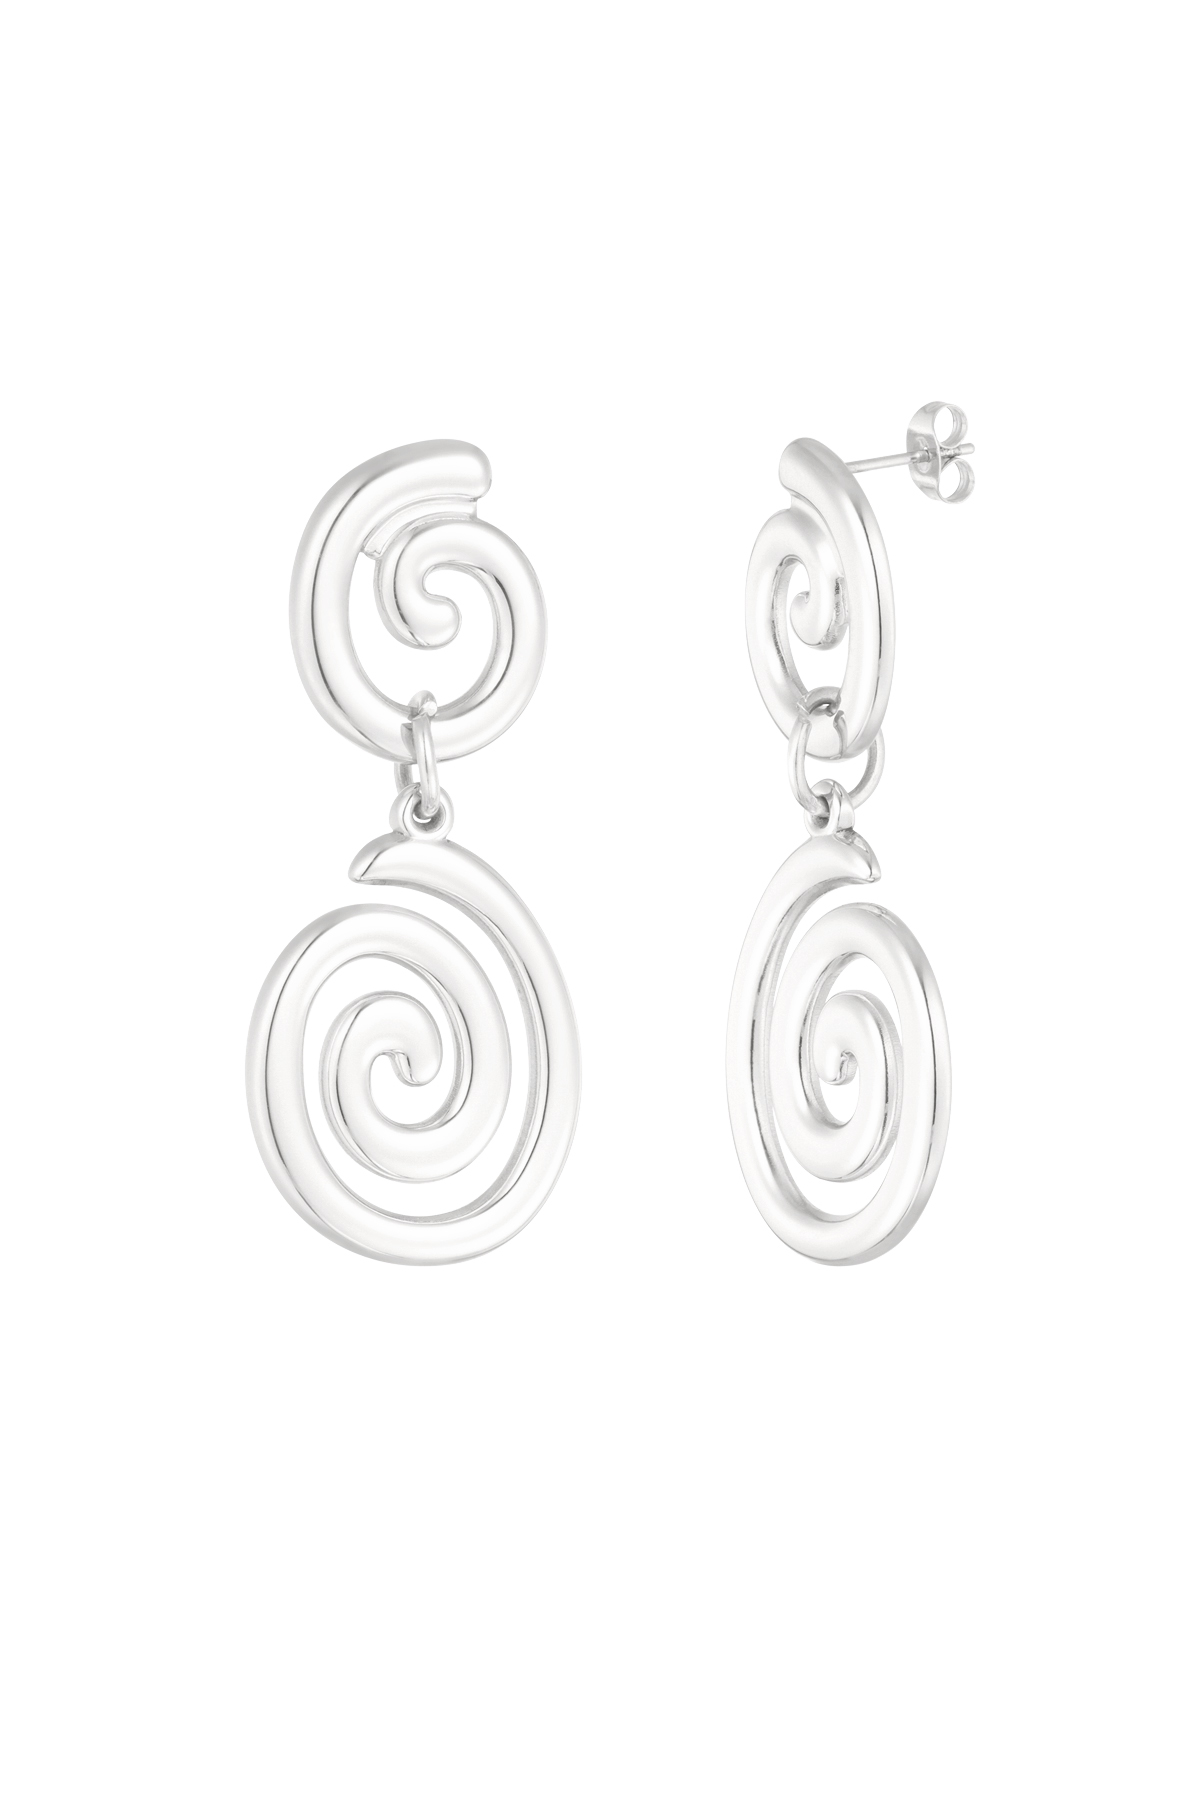 Earrings swirly wave - silver 